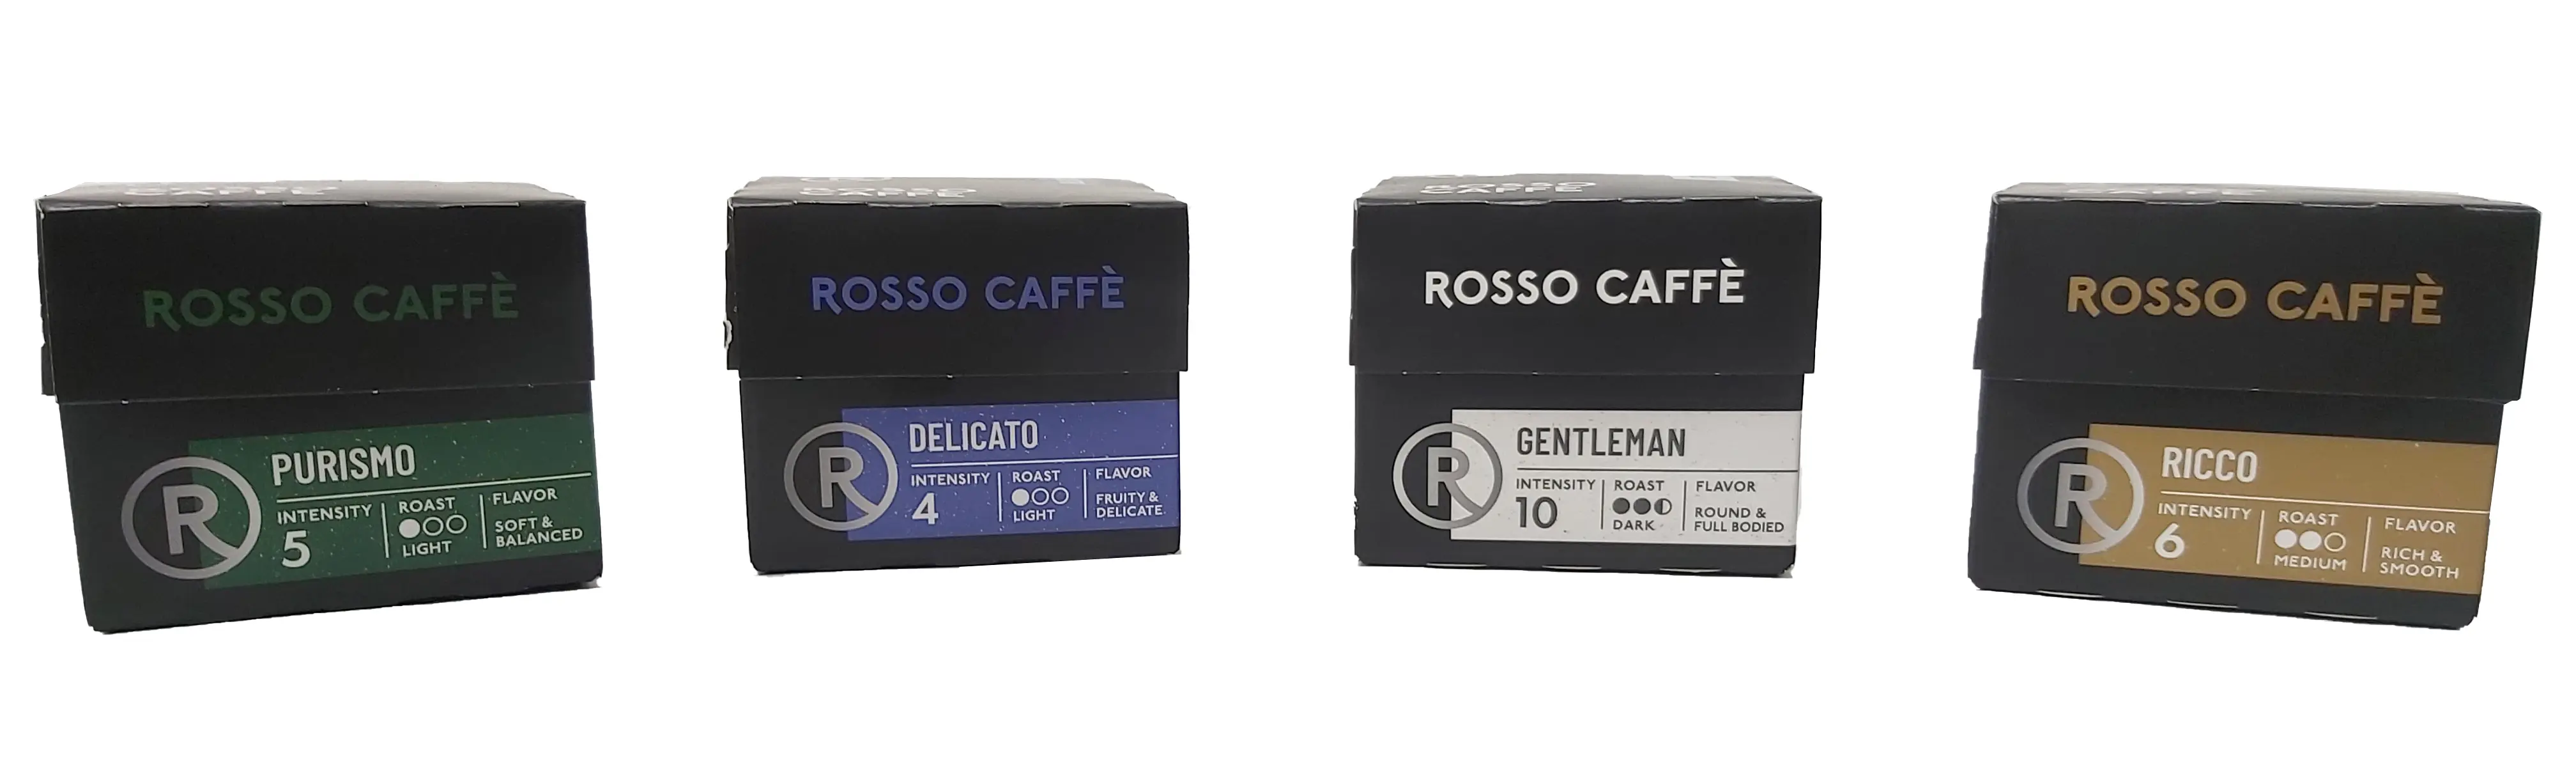 מארז לקפסולות קפה בחוזקים וטעמים שונים - ROSSO CAFE